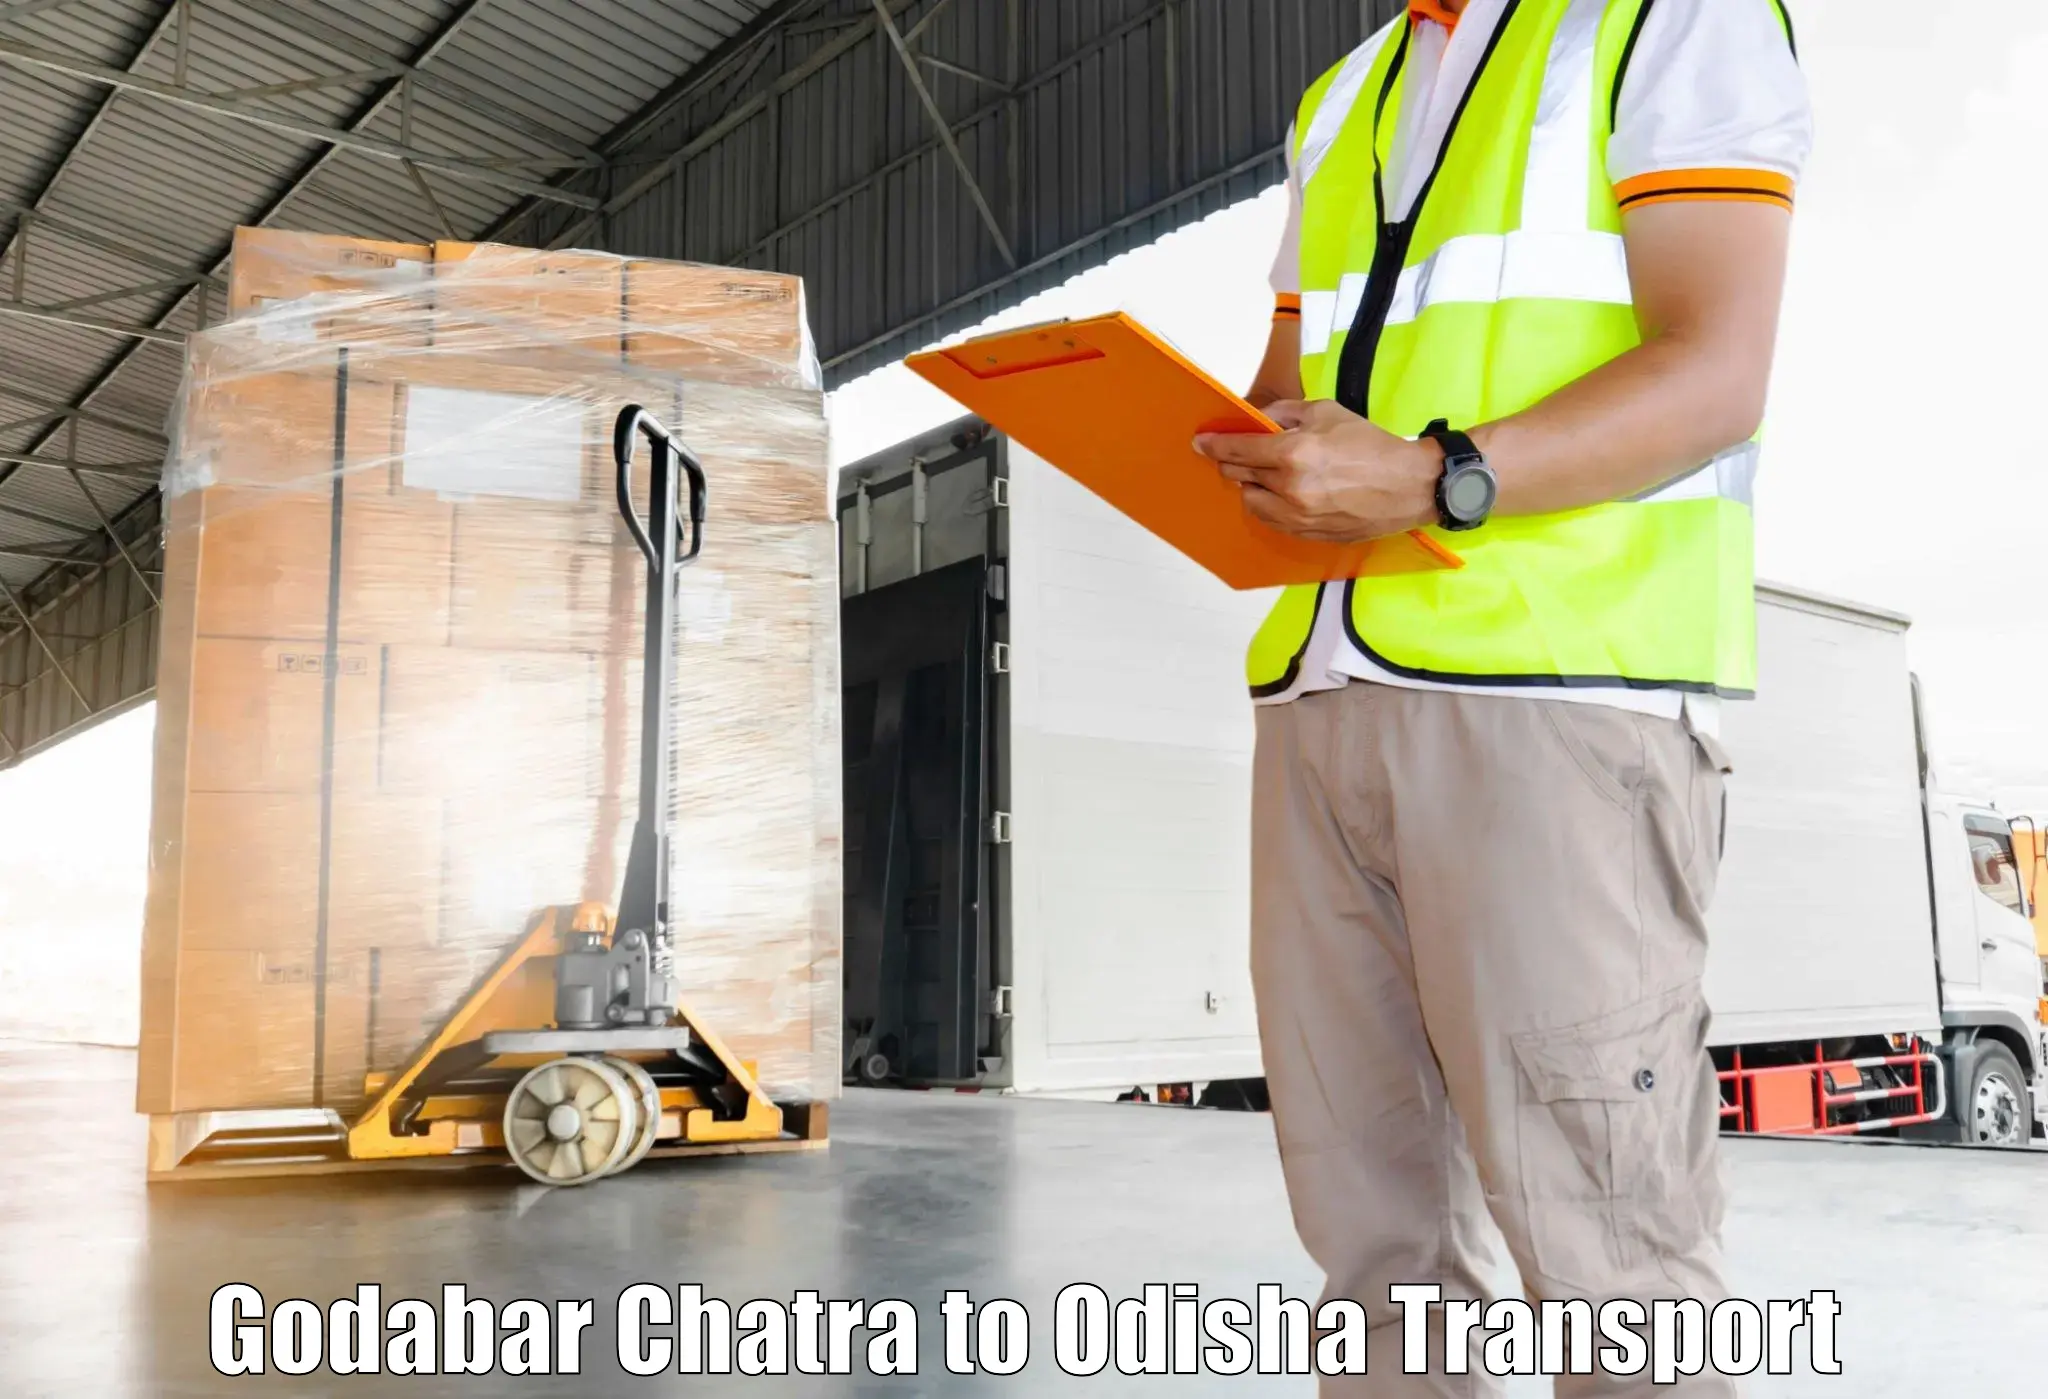 Cargo transportation services Godabar Chatra to Astaranga